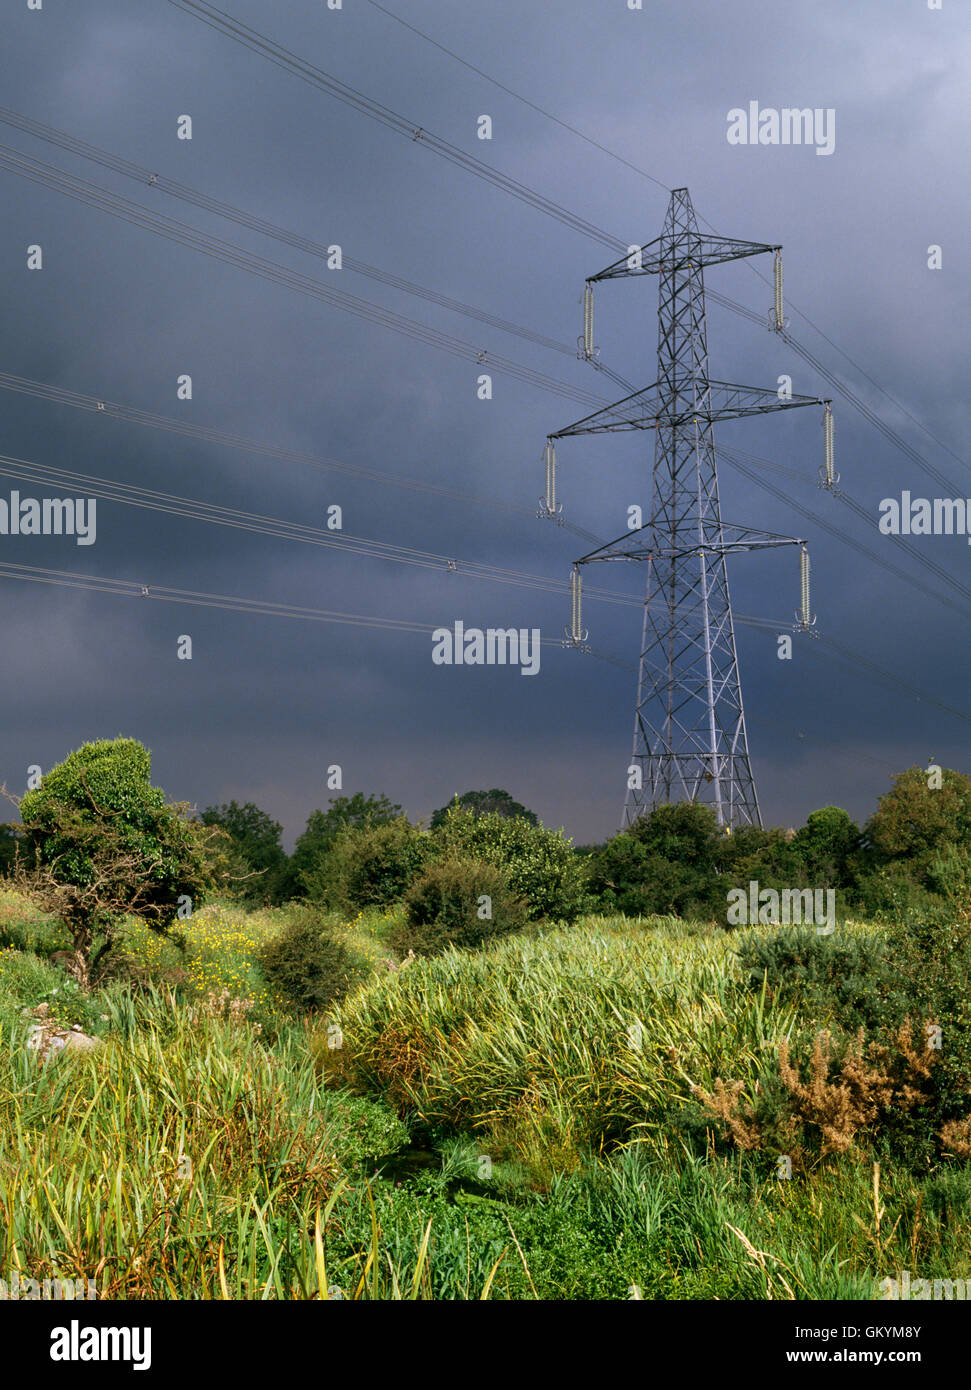 Ein sonnendurchflutetes Pylon und Strom Leitungen zeichnen sich stark gegen Gewitterhimmel über grobe Ackerland und sumpfigen Gestrüpp, Gwynedd, North Wales, UK Stockfoto